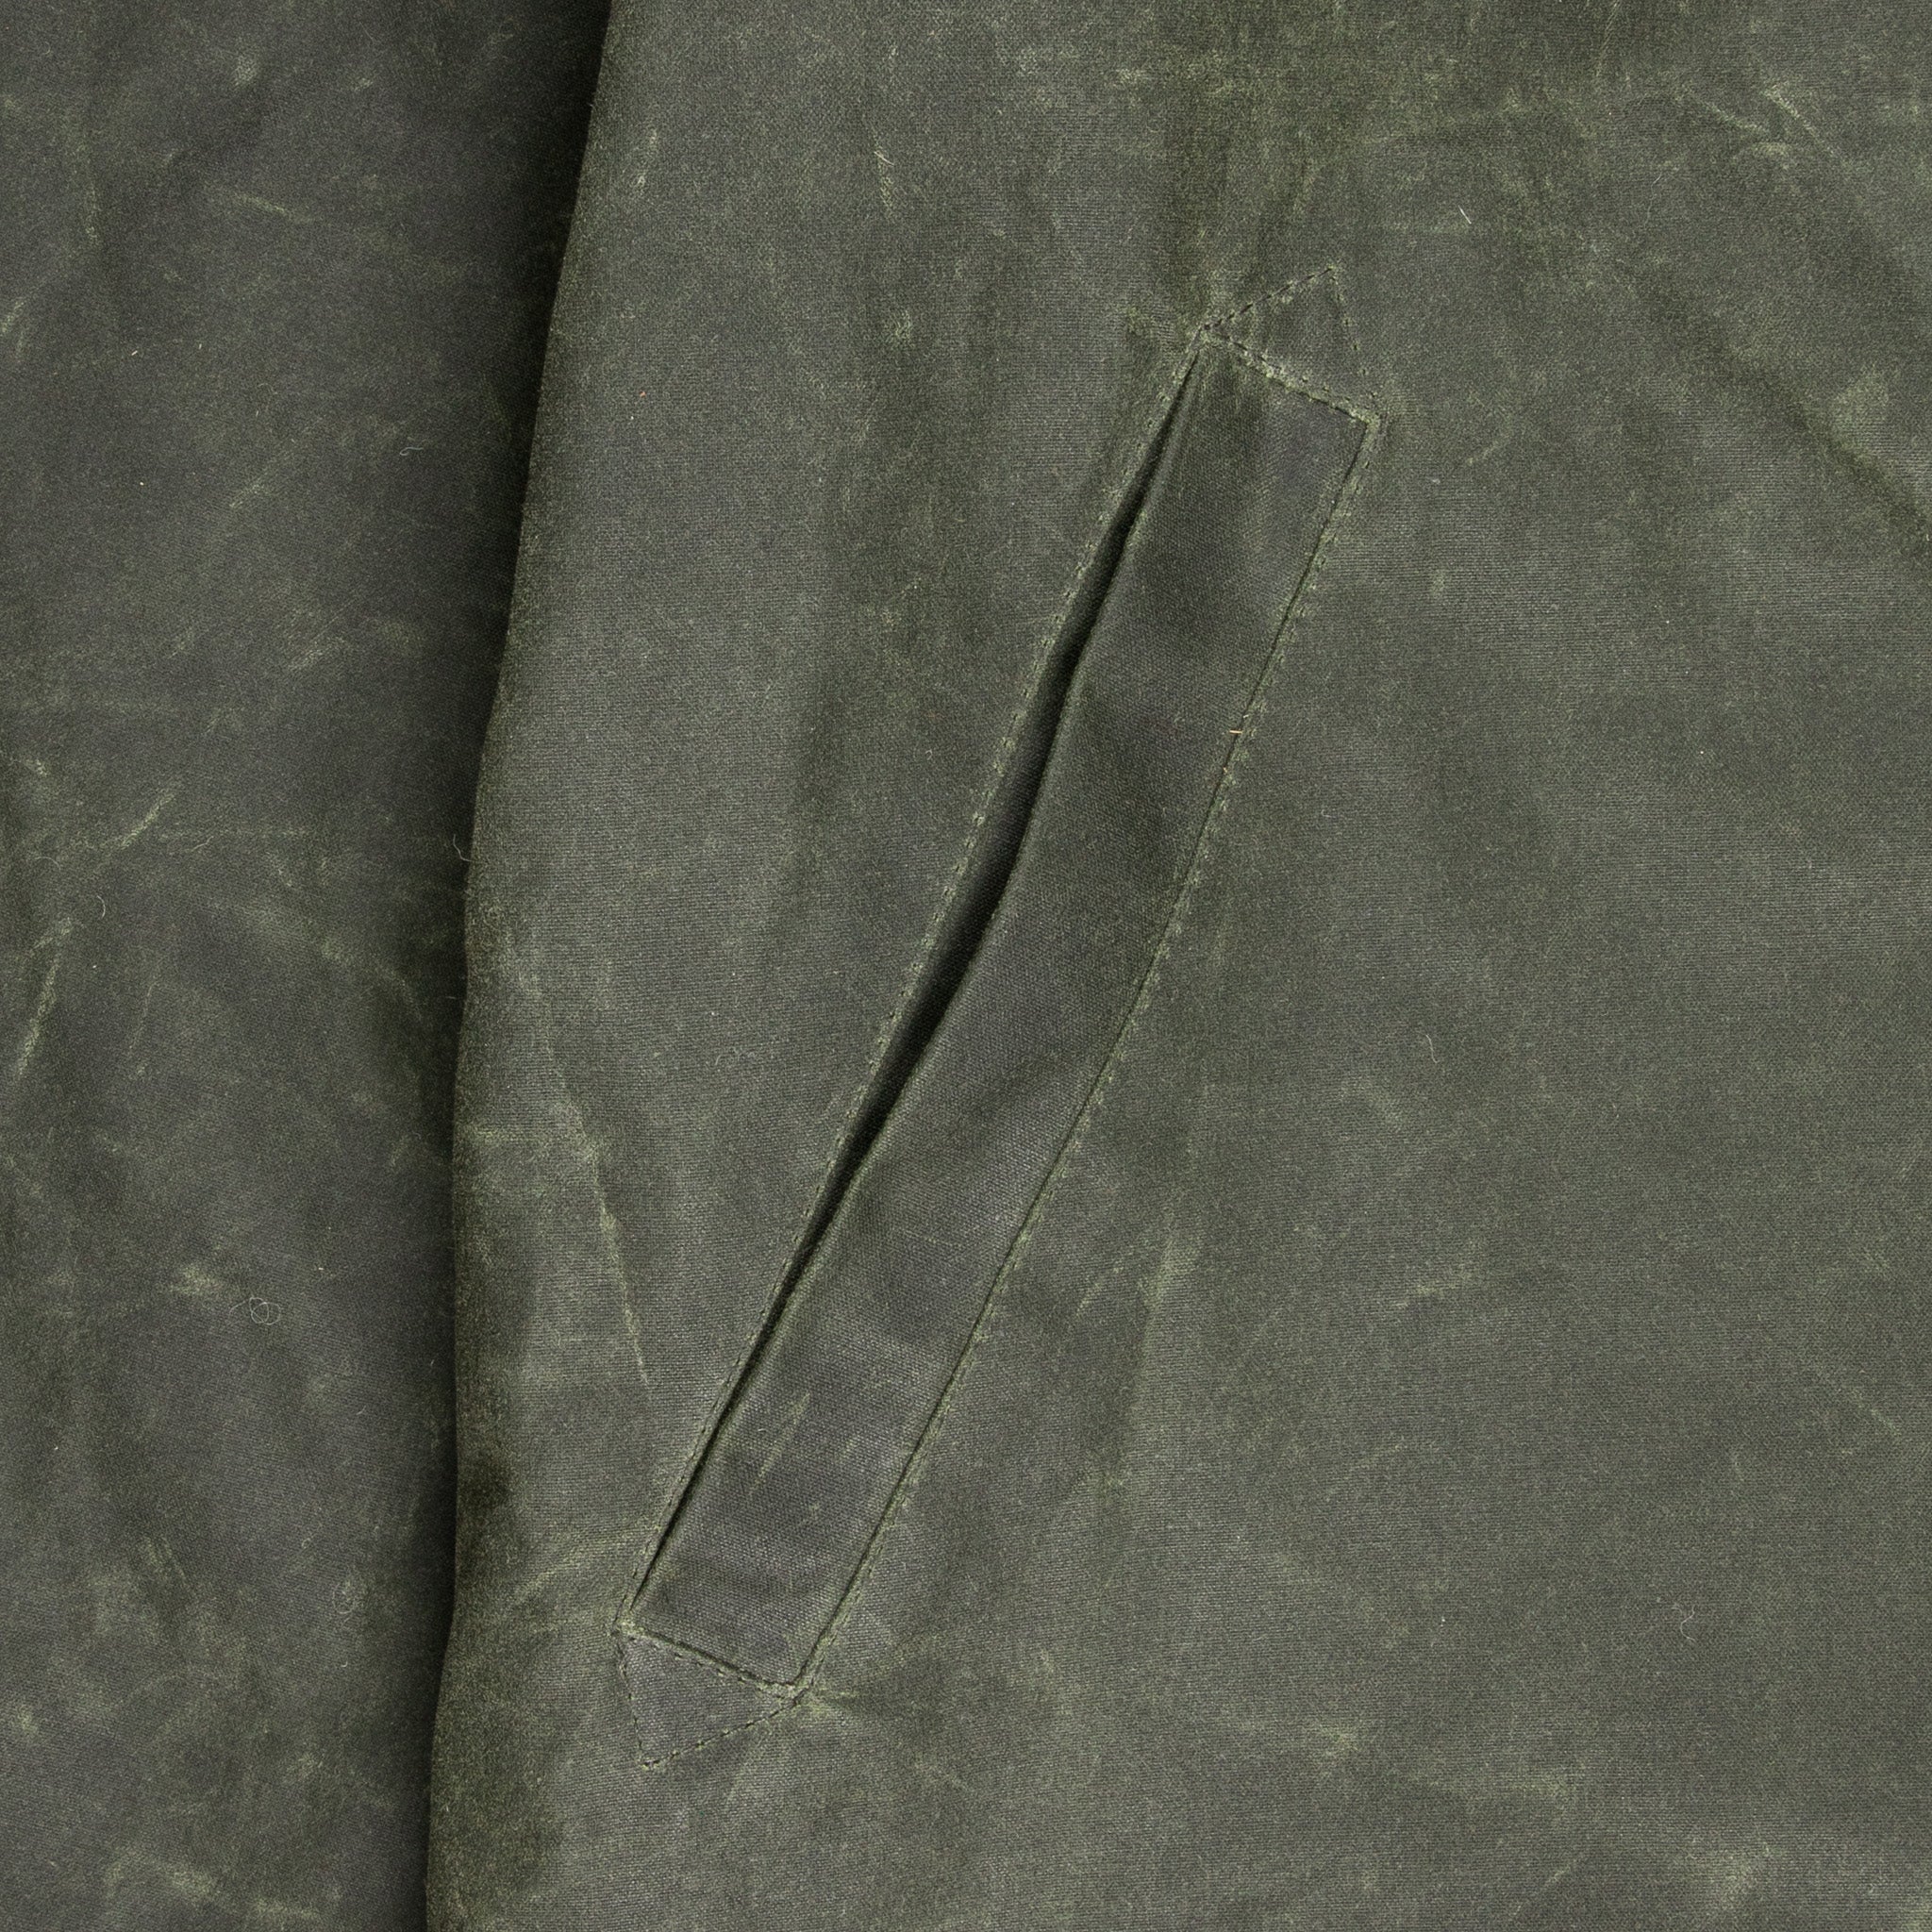 Manifattura Ceccarelli Deck jacket Dark Green